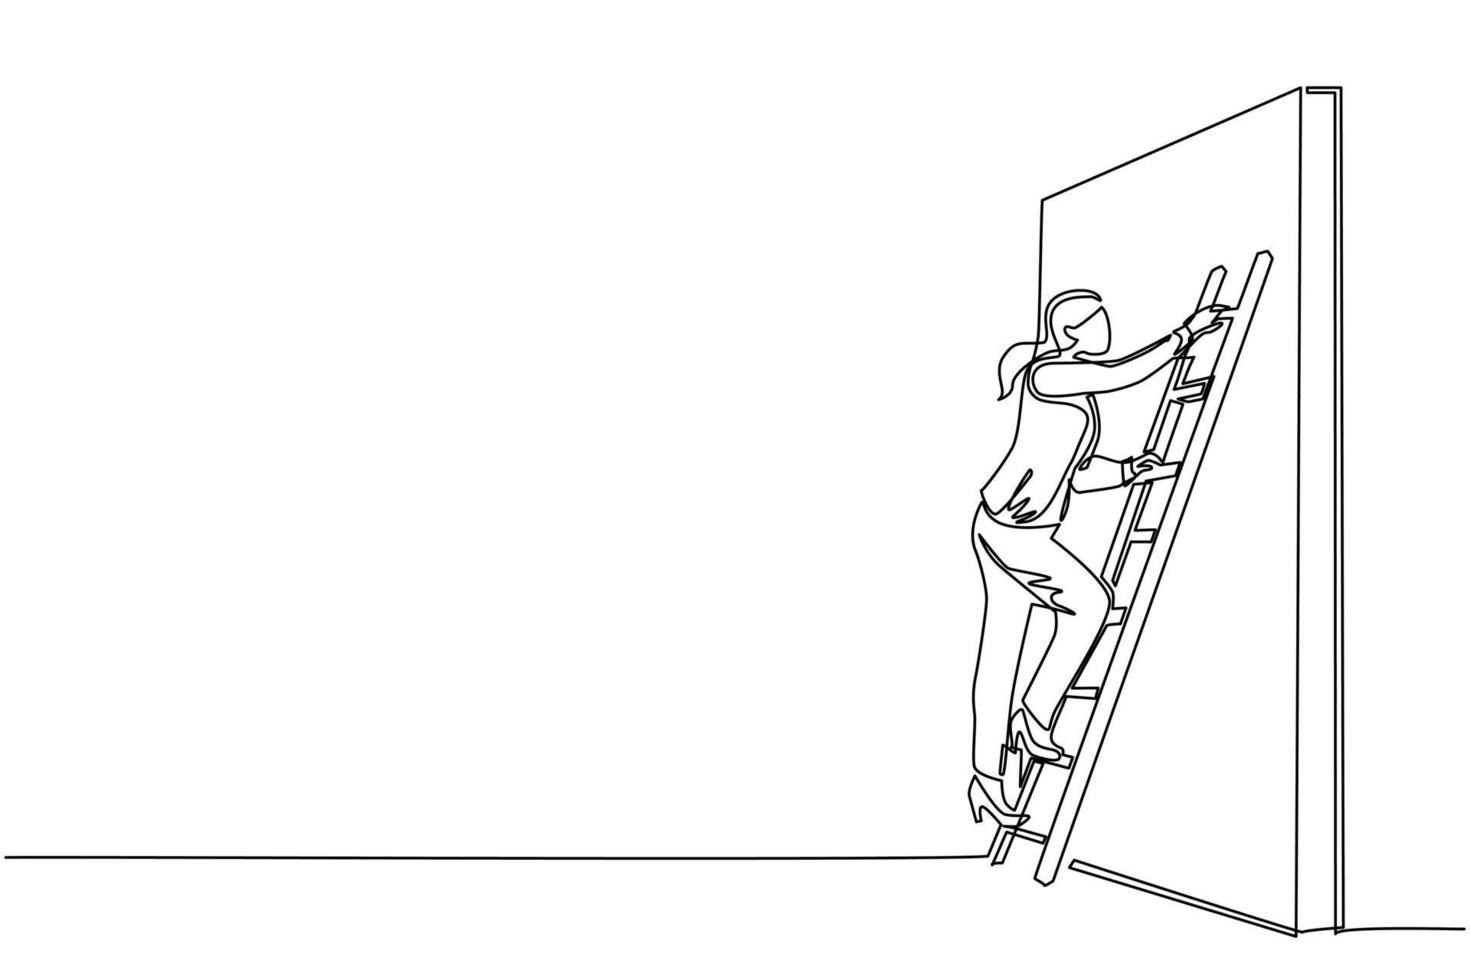 dibujo continuo de una línea mujer de negocios subiendo por la pared con escalera. metáfora del obstáculo comercial. símbolo para el crecimiento profesional, encontrando una solución creativa. ilustración de vector de diseño de dibujo de una sola línea